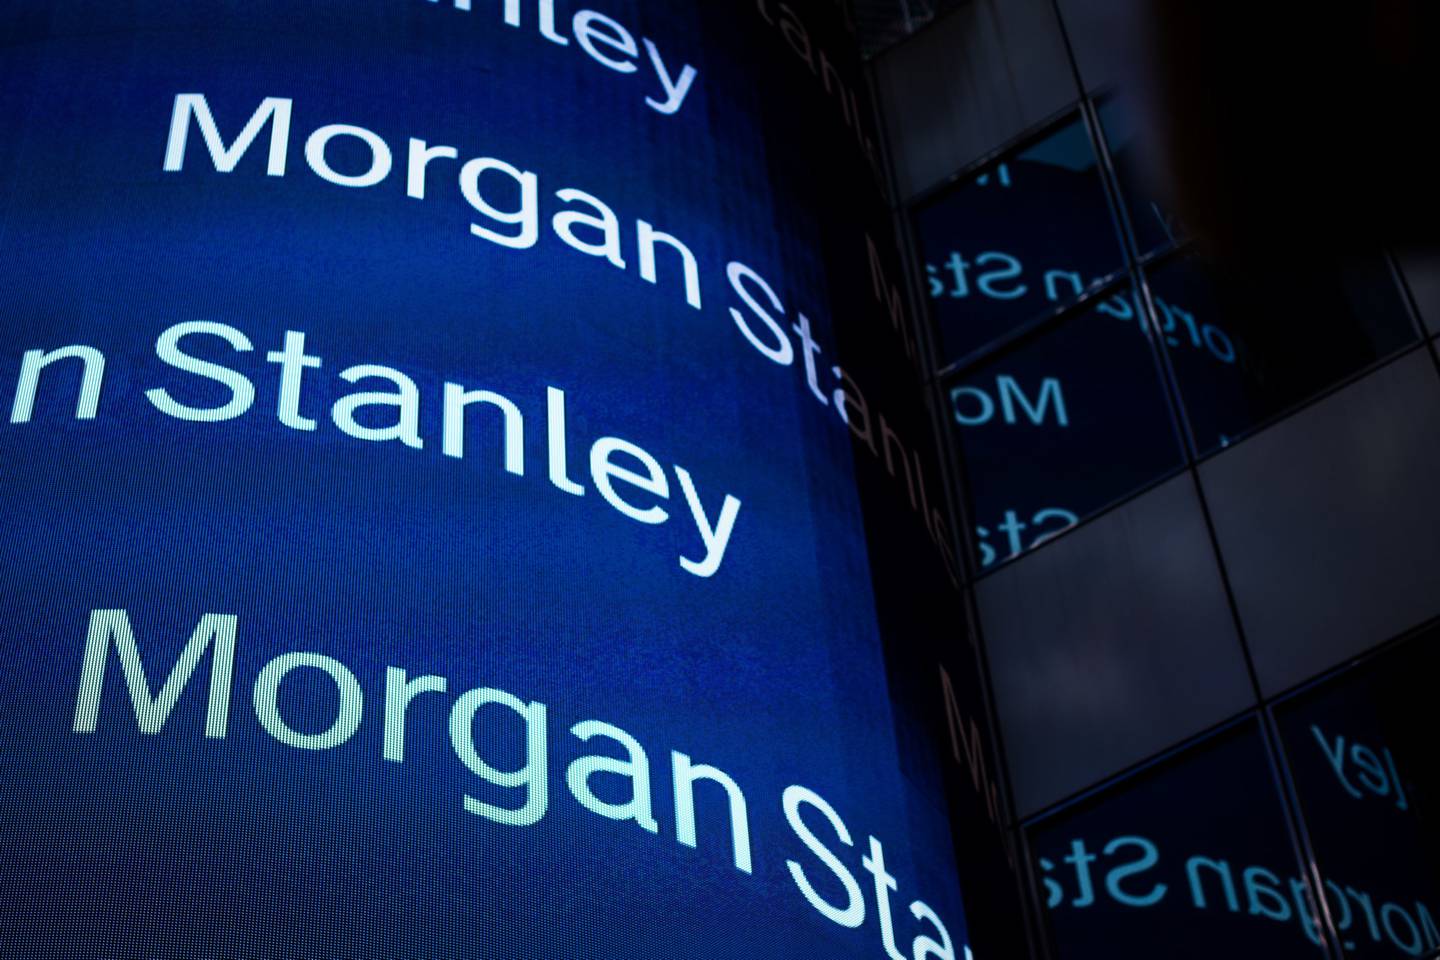 El logo de Morgan Stanley